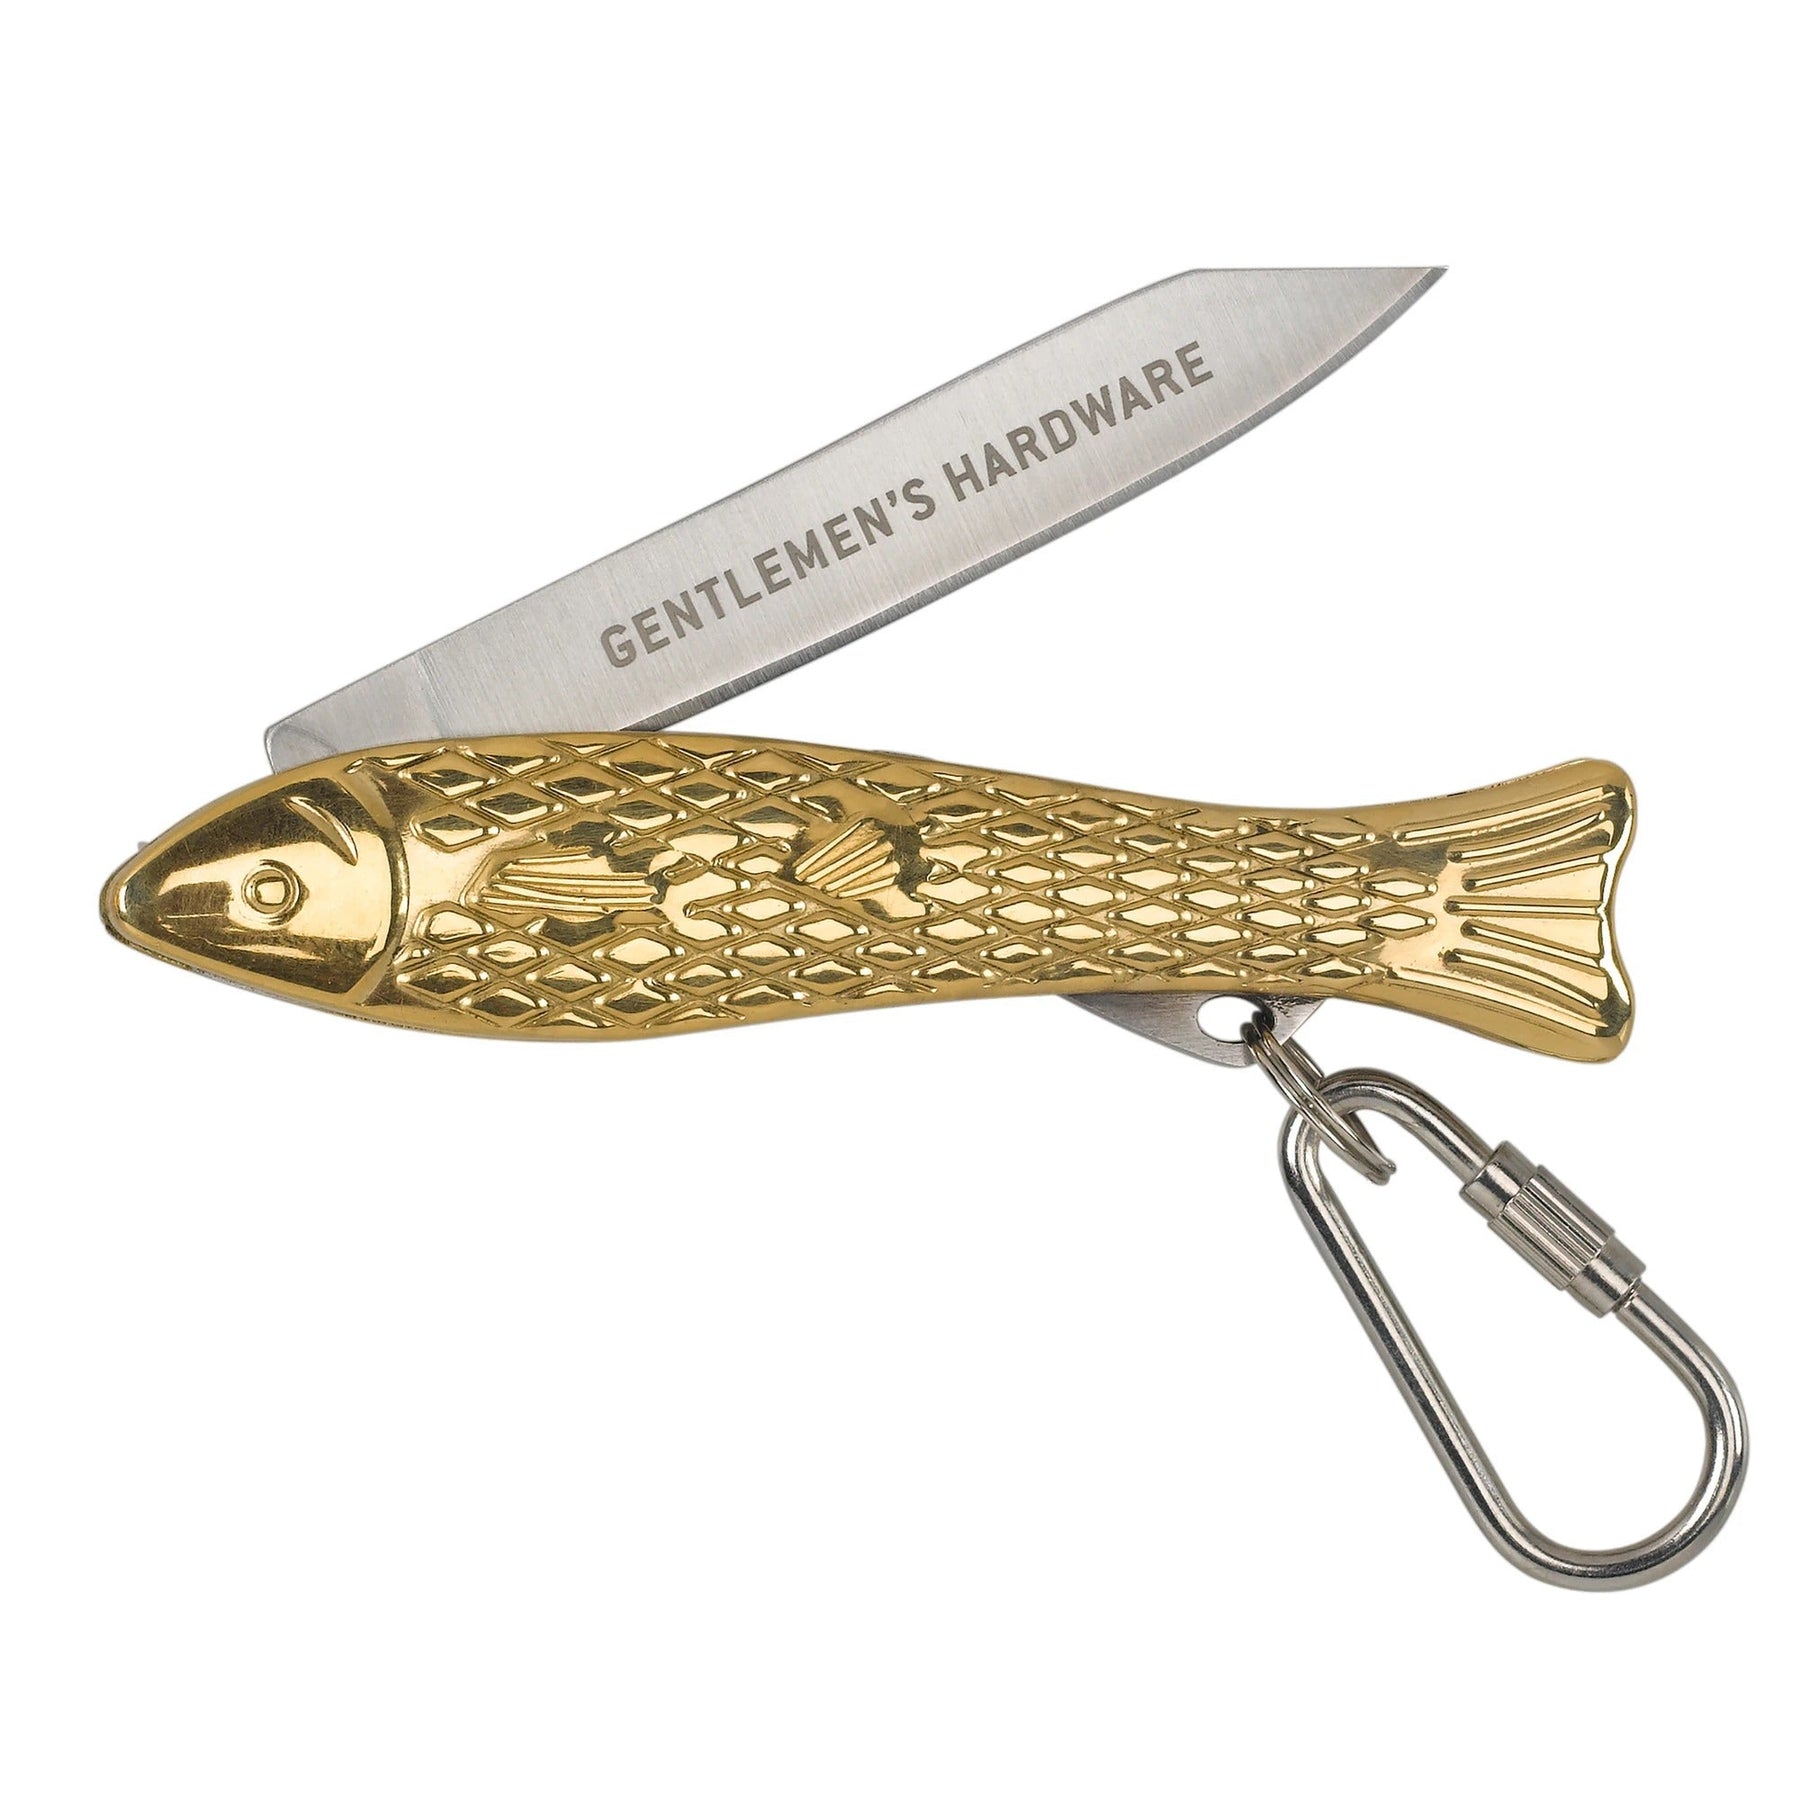 Gentlemen's Hardware Pocket Fish Penknife